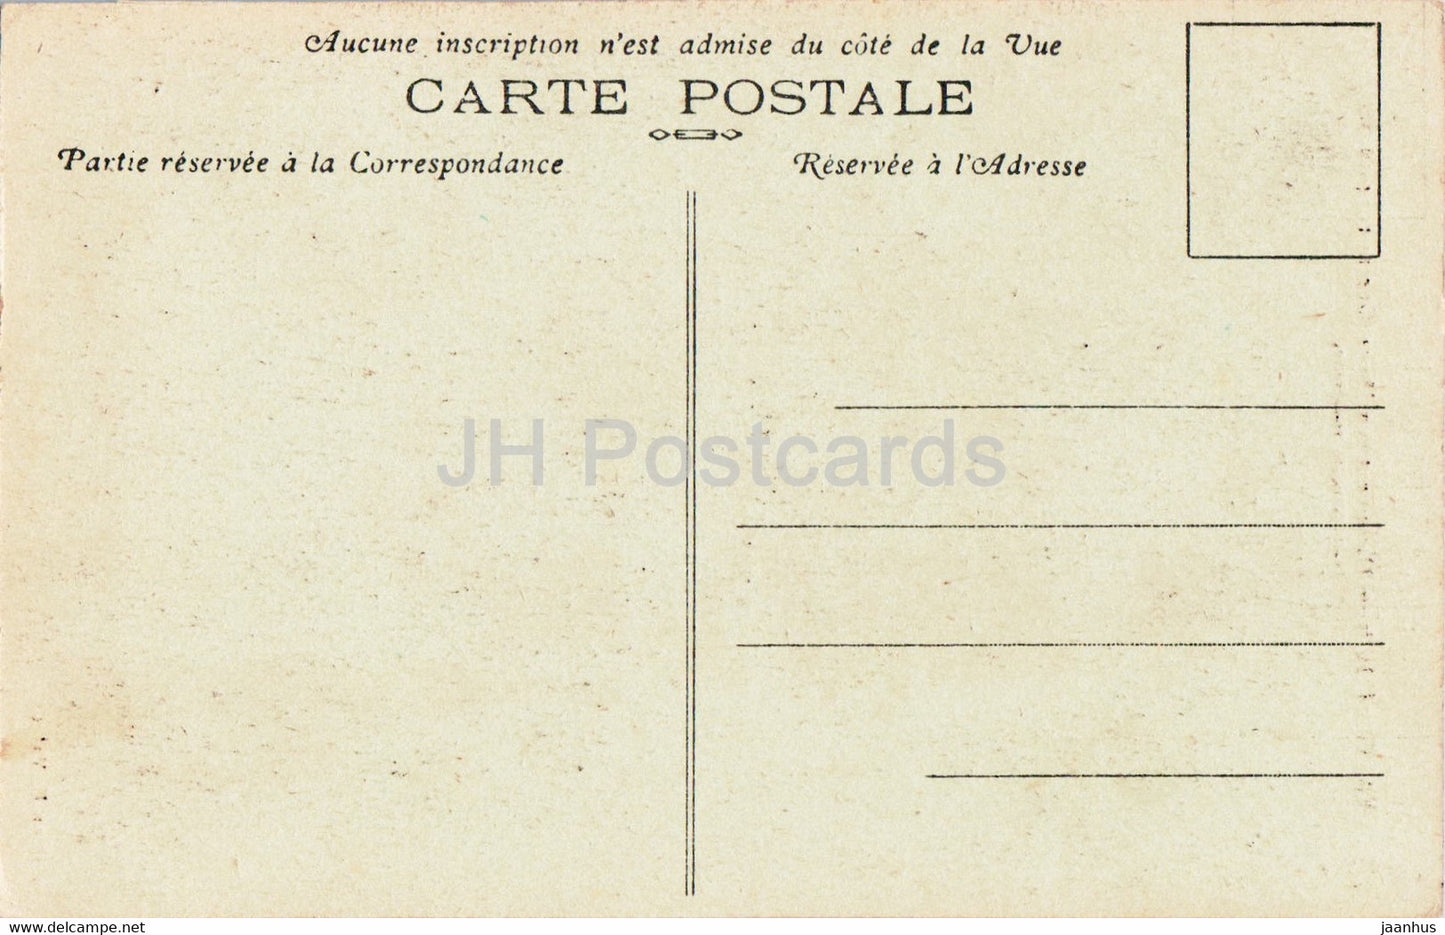 Saint Dizier - Monument aux Morts - Guerre 1914-1918 - Saupique - old postcard - France - unused